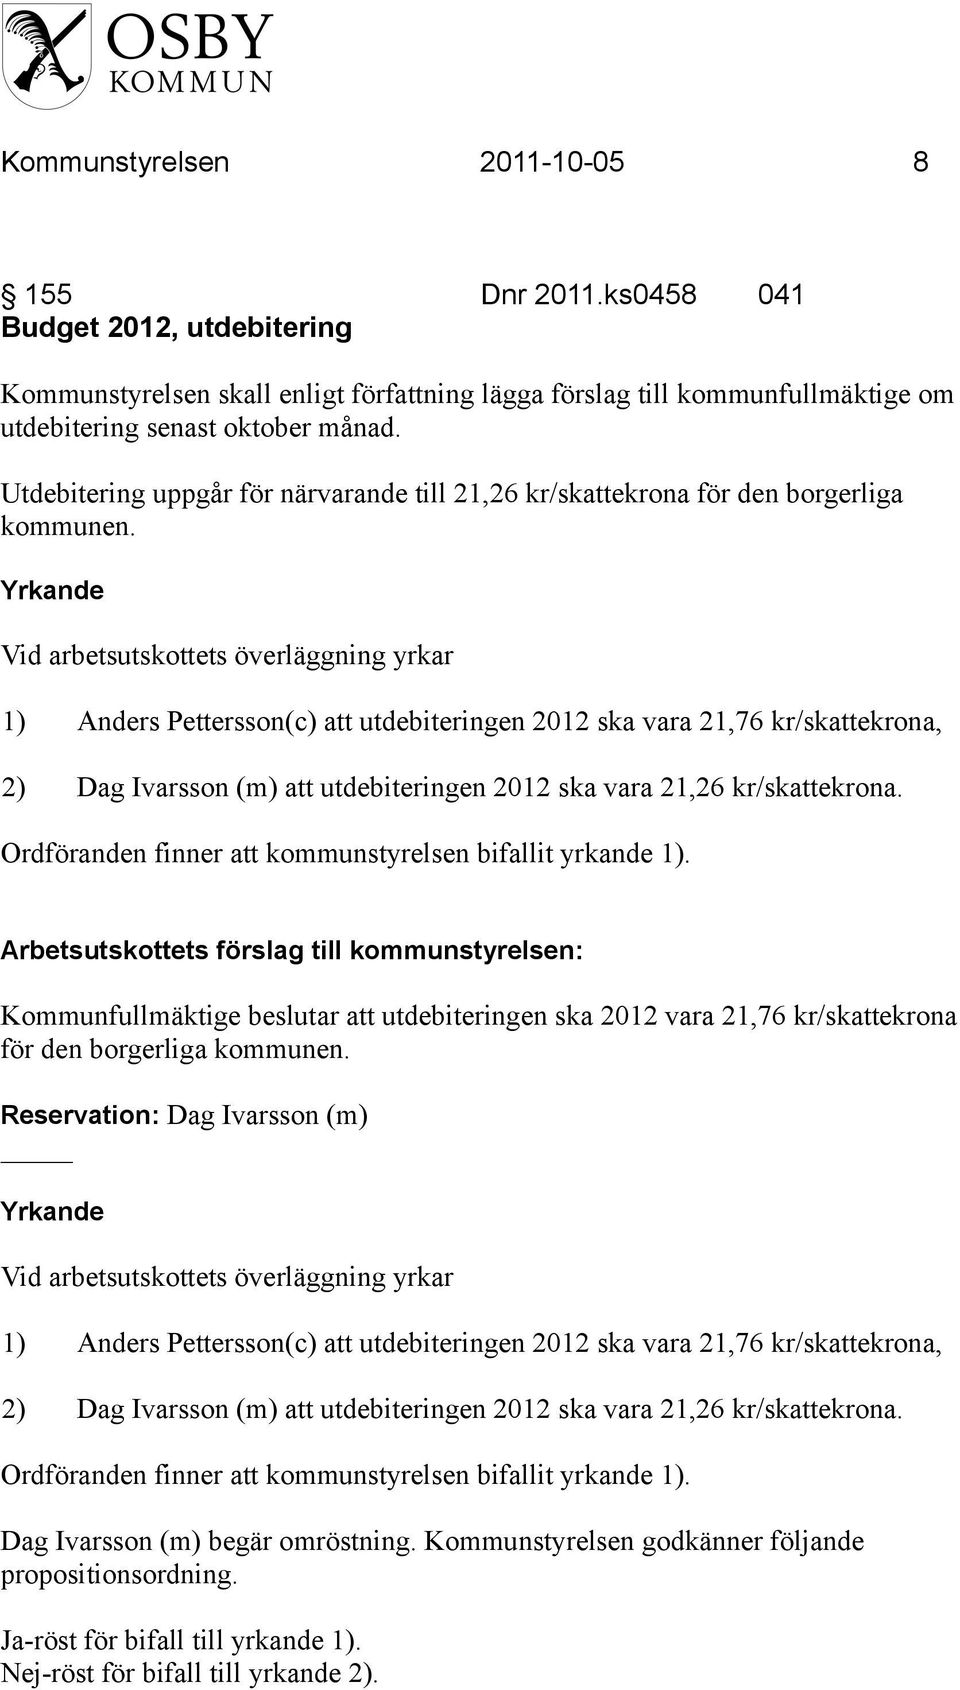 Yrkande Vid arbetsutskottets överläggning yrkar 1) Anders Pettersson(c) att utdebiteringen 2012 ska vara 21,76 kr/skattekrona, 2) Dag Ivarsson (m) att utdebiteringen 2012 ska vara 21,26